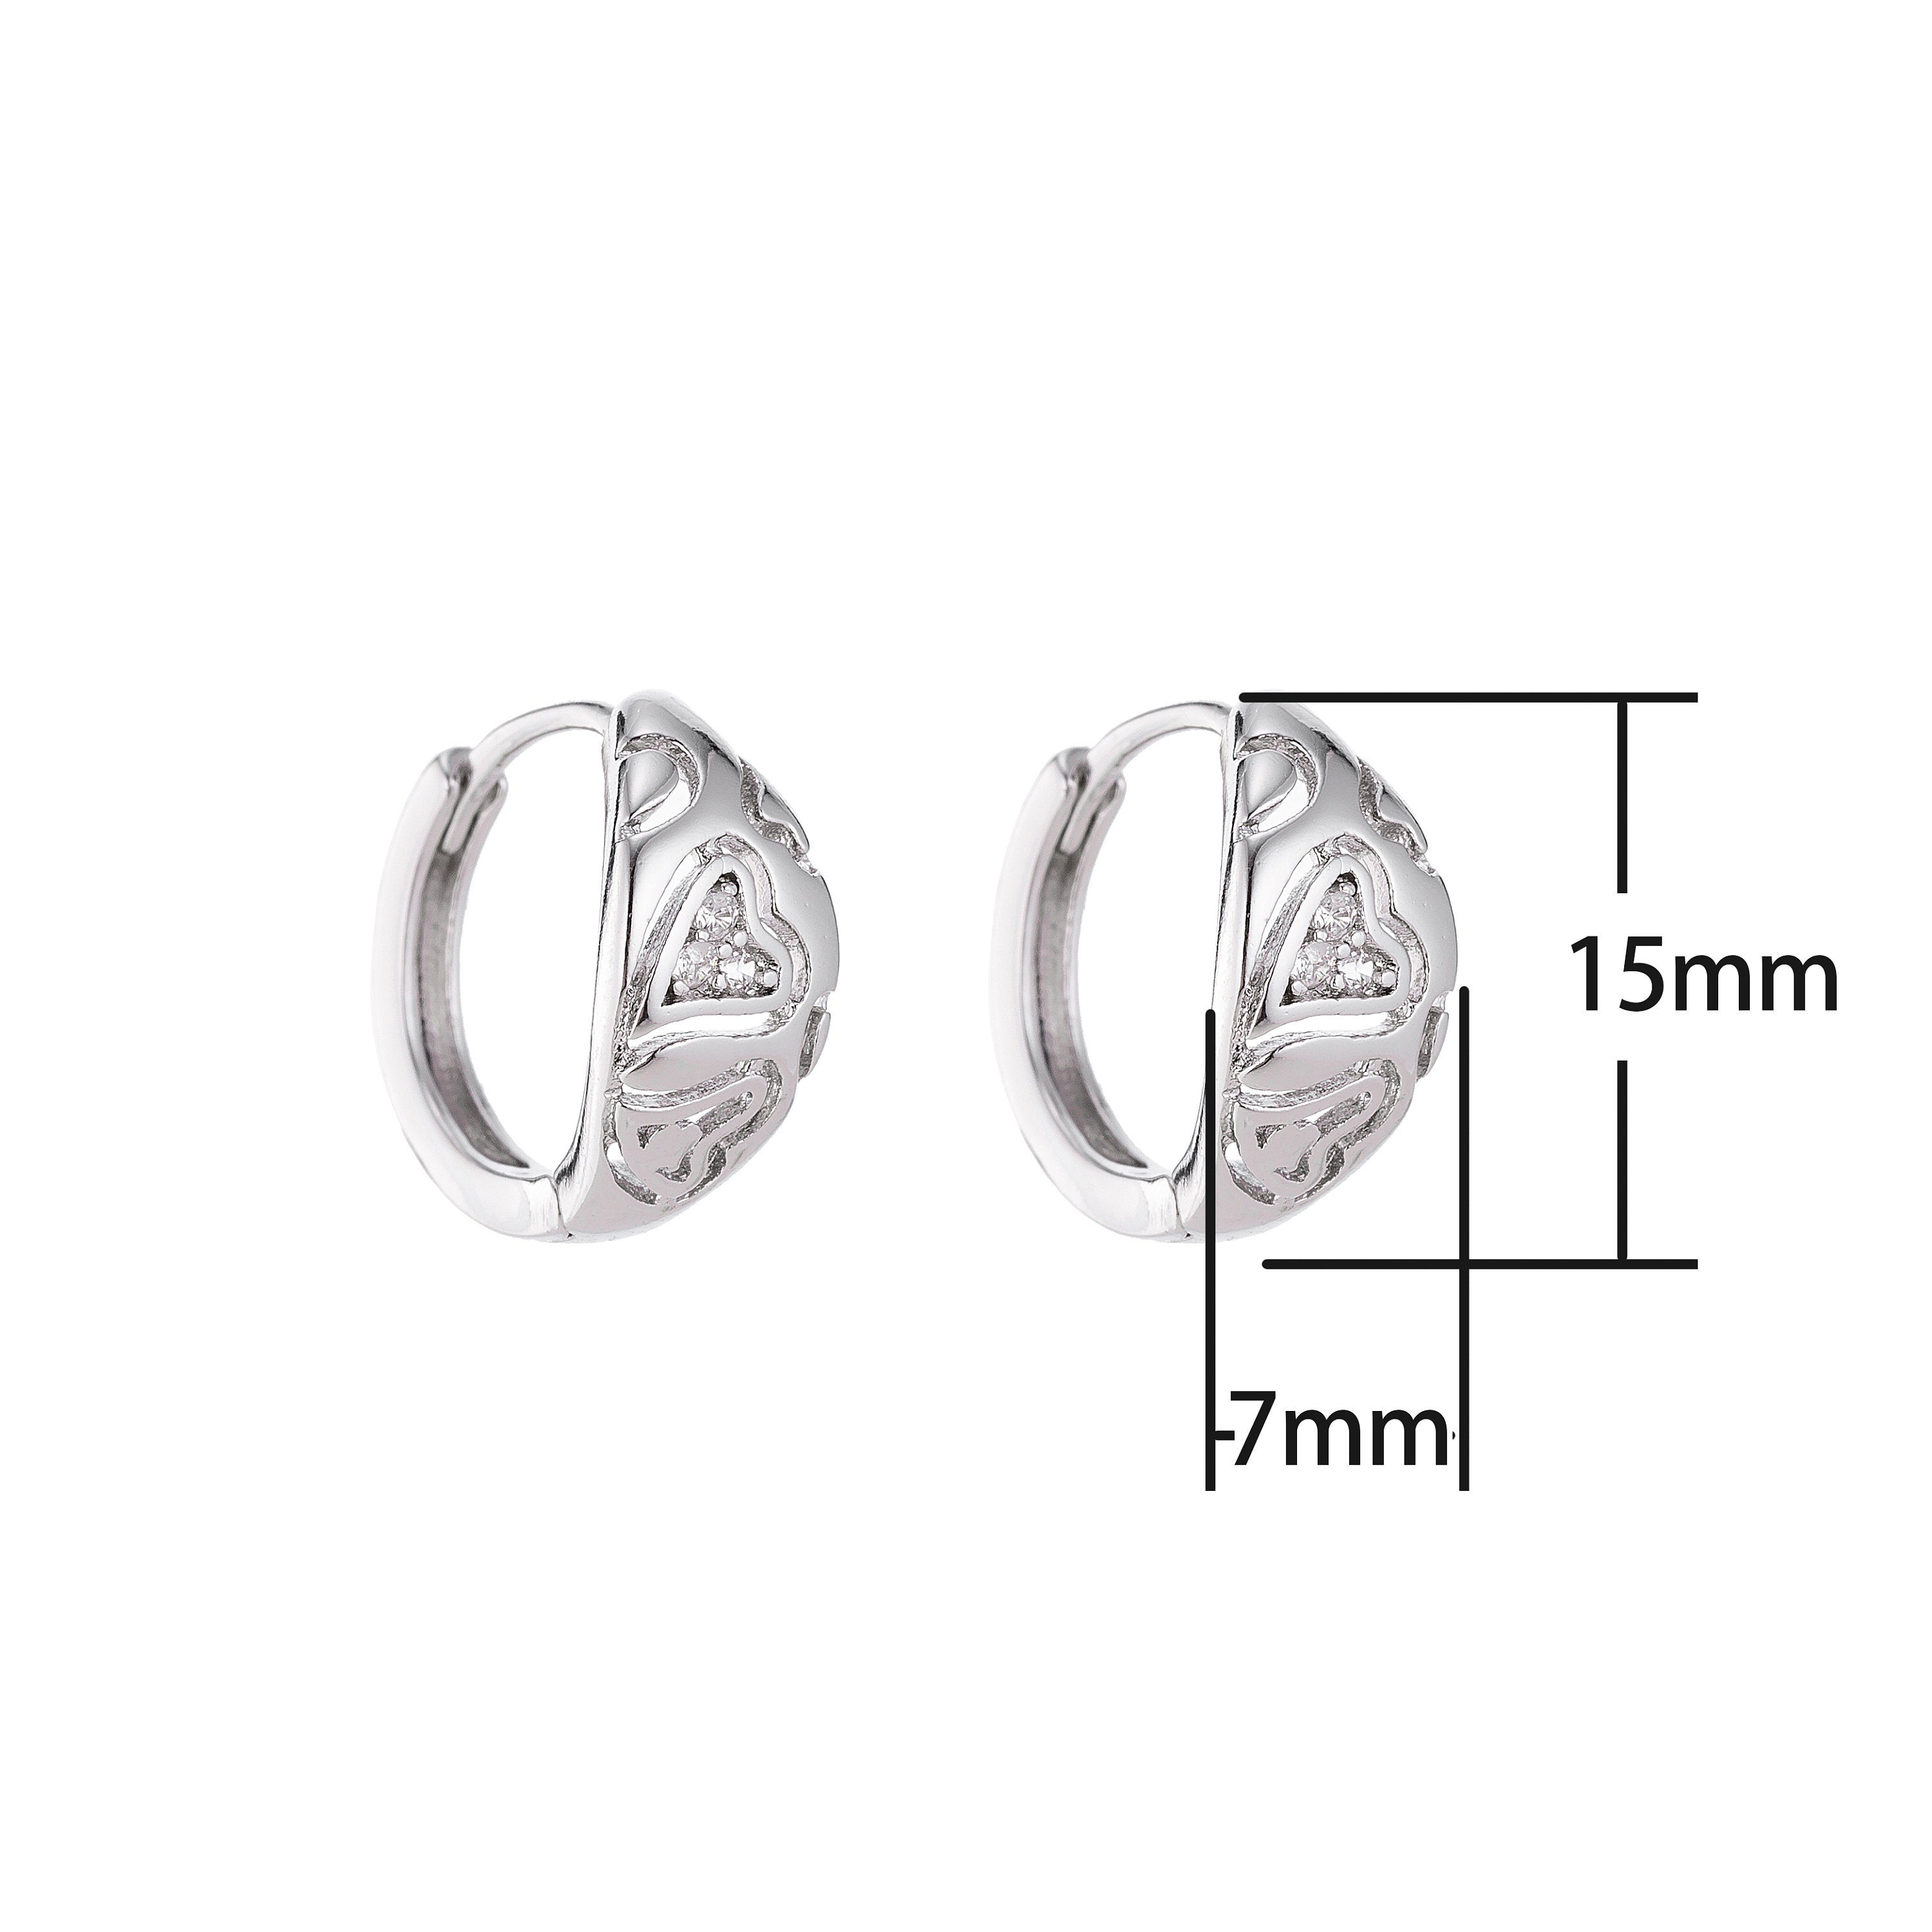 Silver Diamond Heart Small Huggie Earrings, Cubic Zirconia Gem, Silver Earrings, Lightweight Earrings, Small Earrings, Cute Earrings - DLUXCA